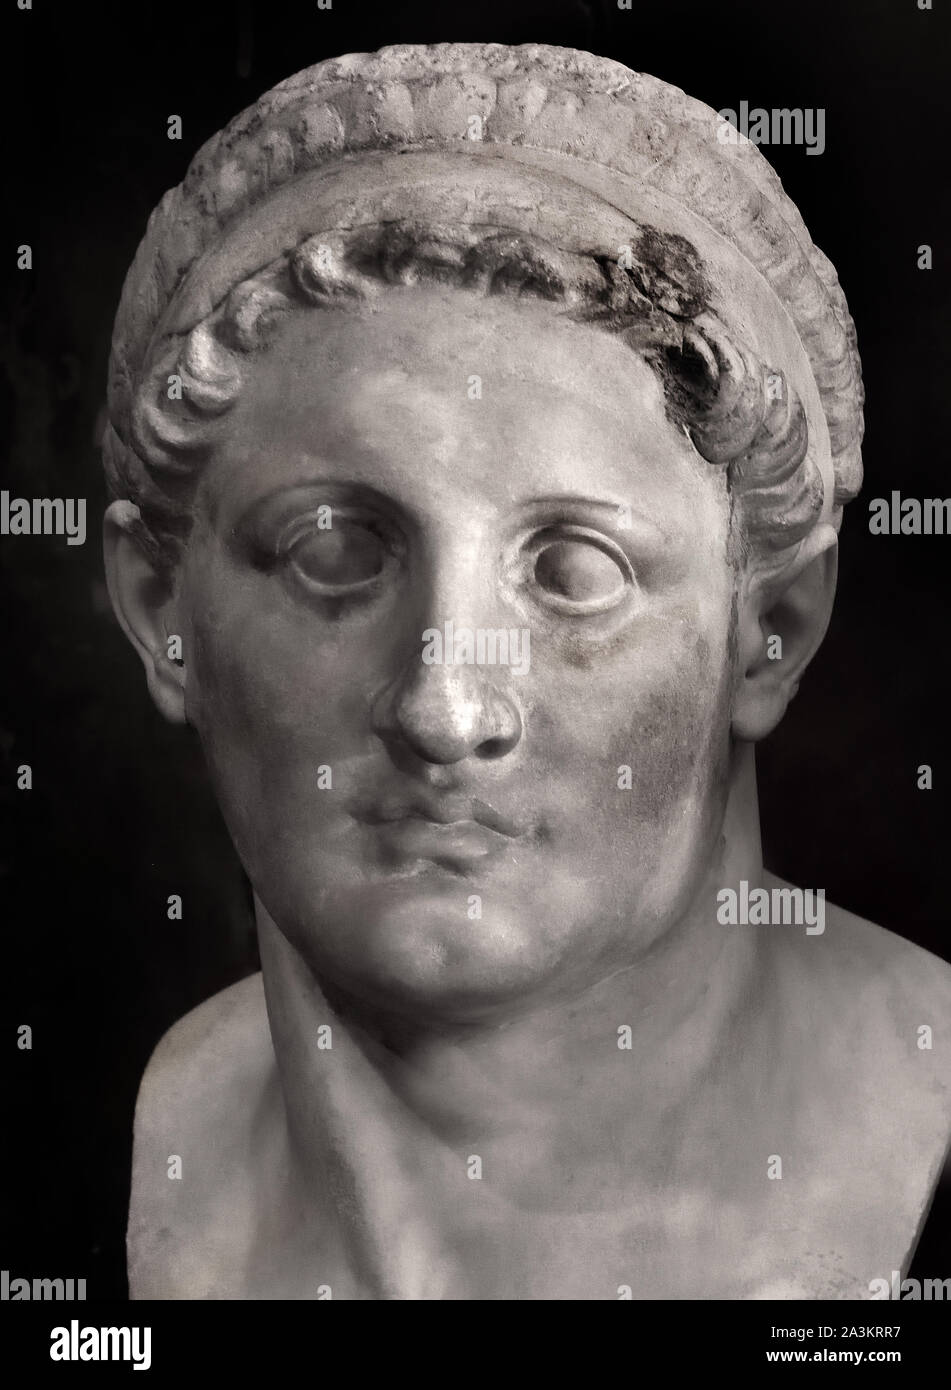 Ptolemy I Soter, ( Ptolemy I Soter Pharaoh) (born 367/366 bc